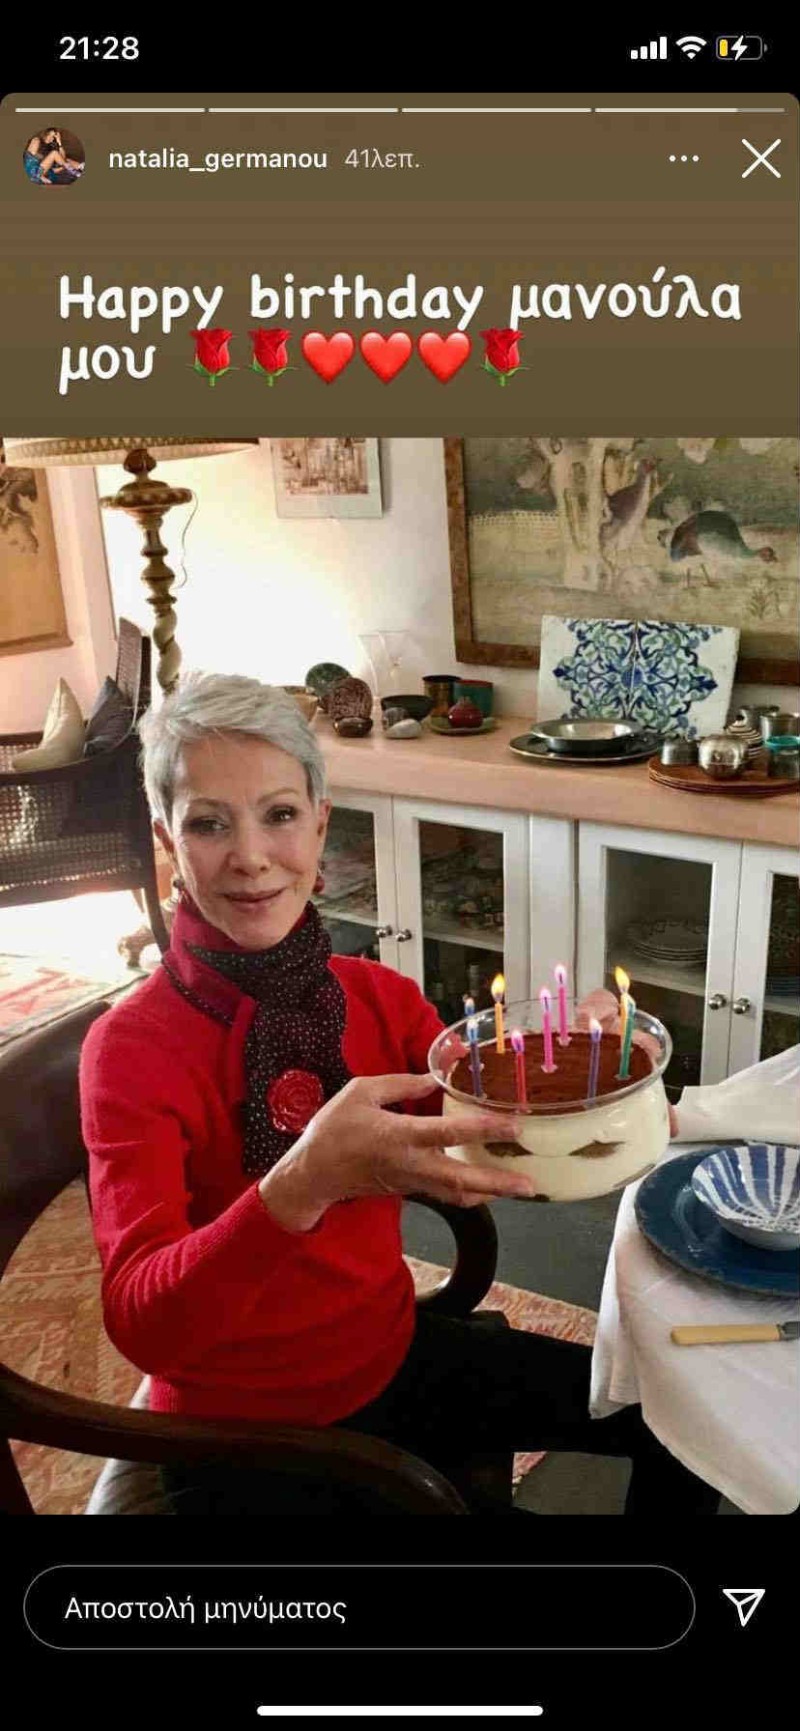 Η μαμά της γερμανού έχει γενέθλια και δεν την αναγνωρίσαμε στη φωτογραφία